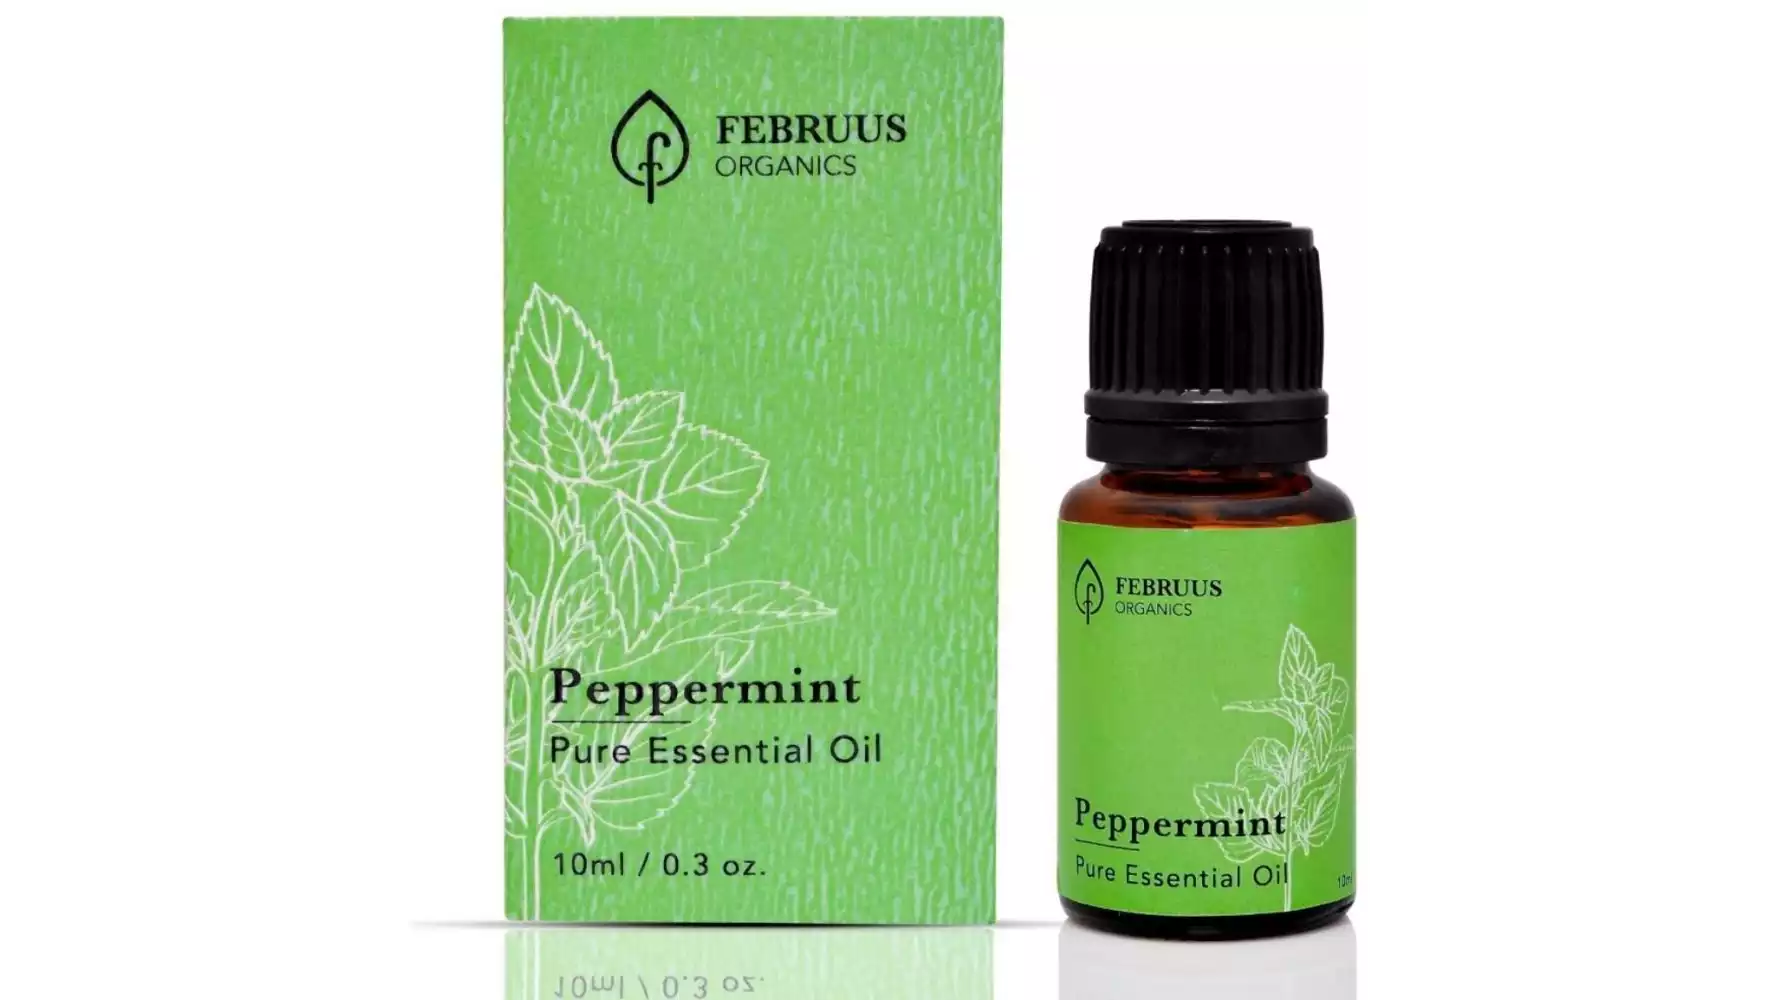 Februus Organics Peppermint Essential Oil (10ml)